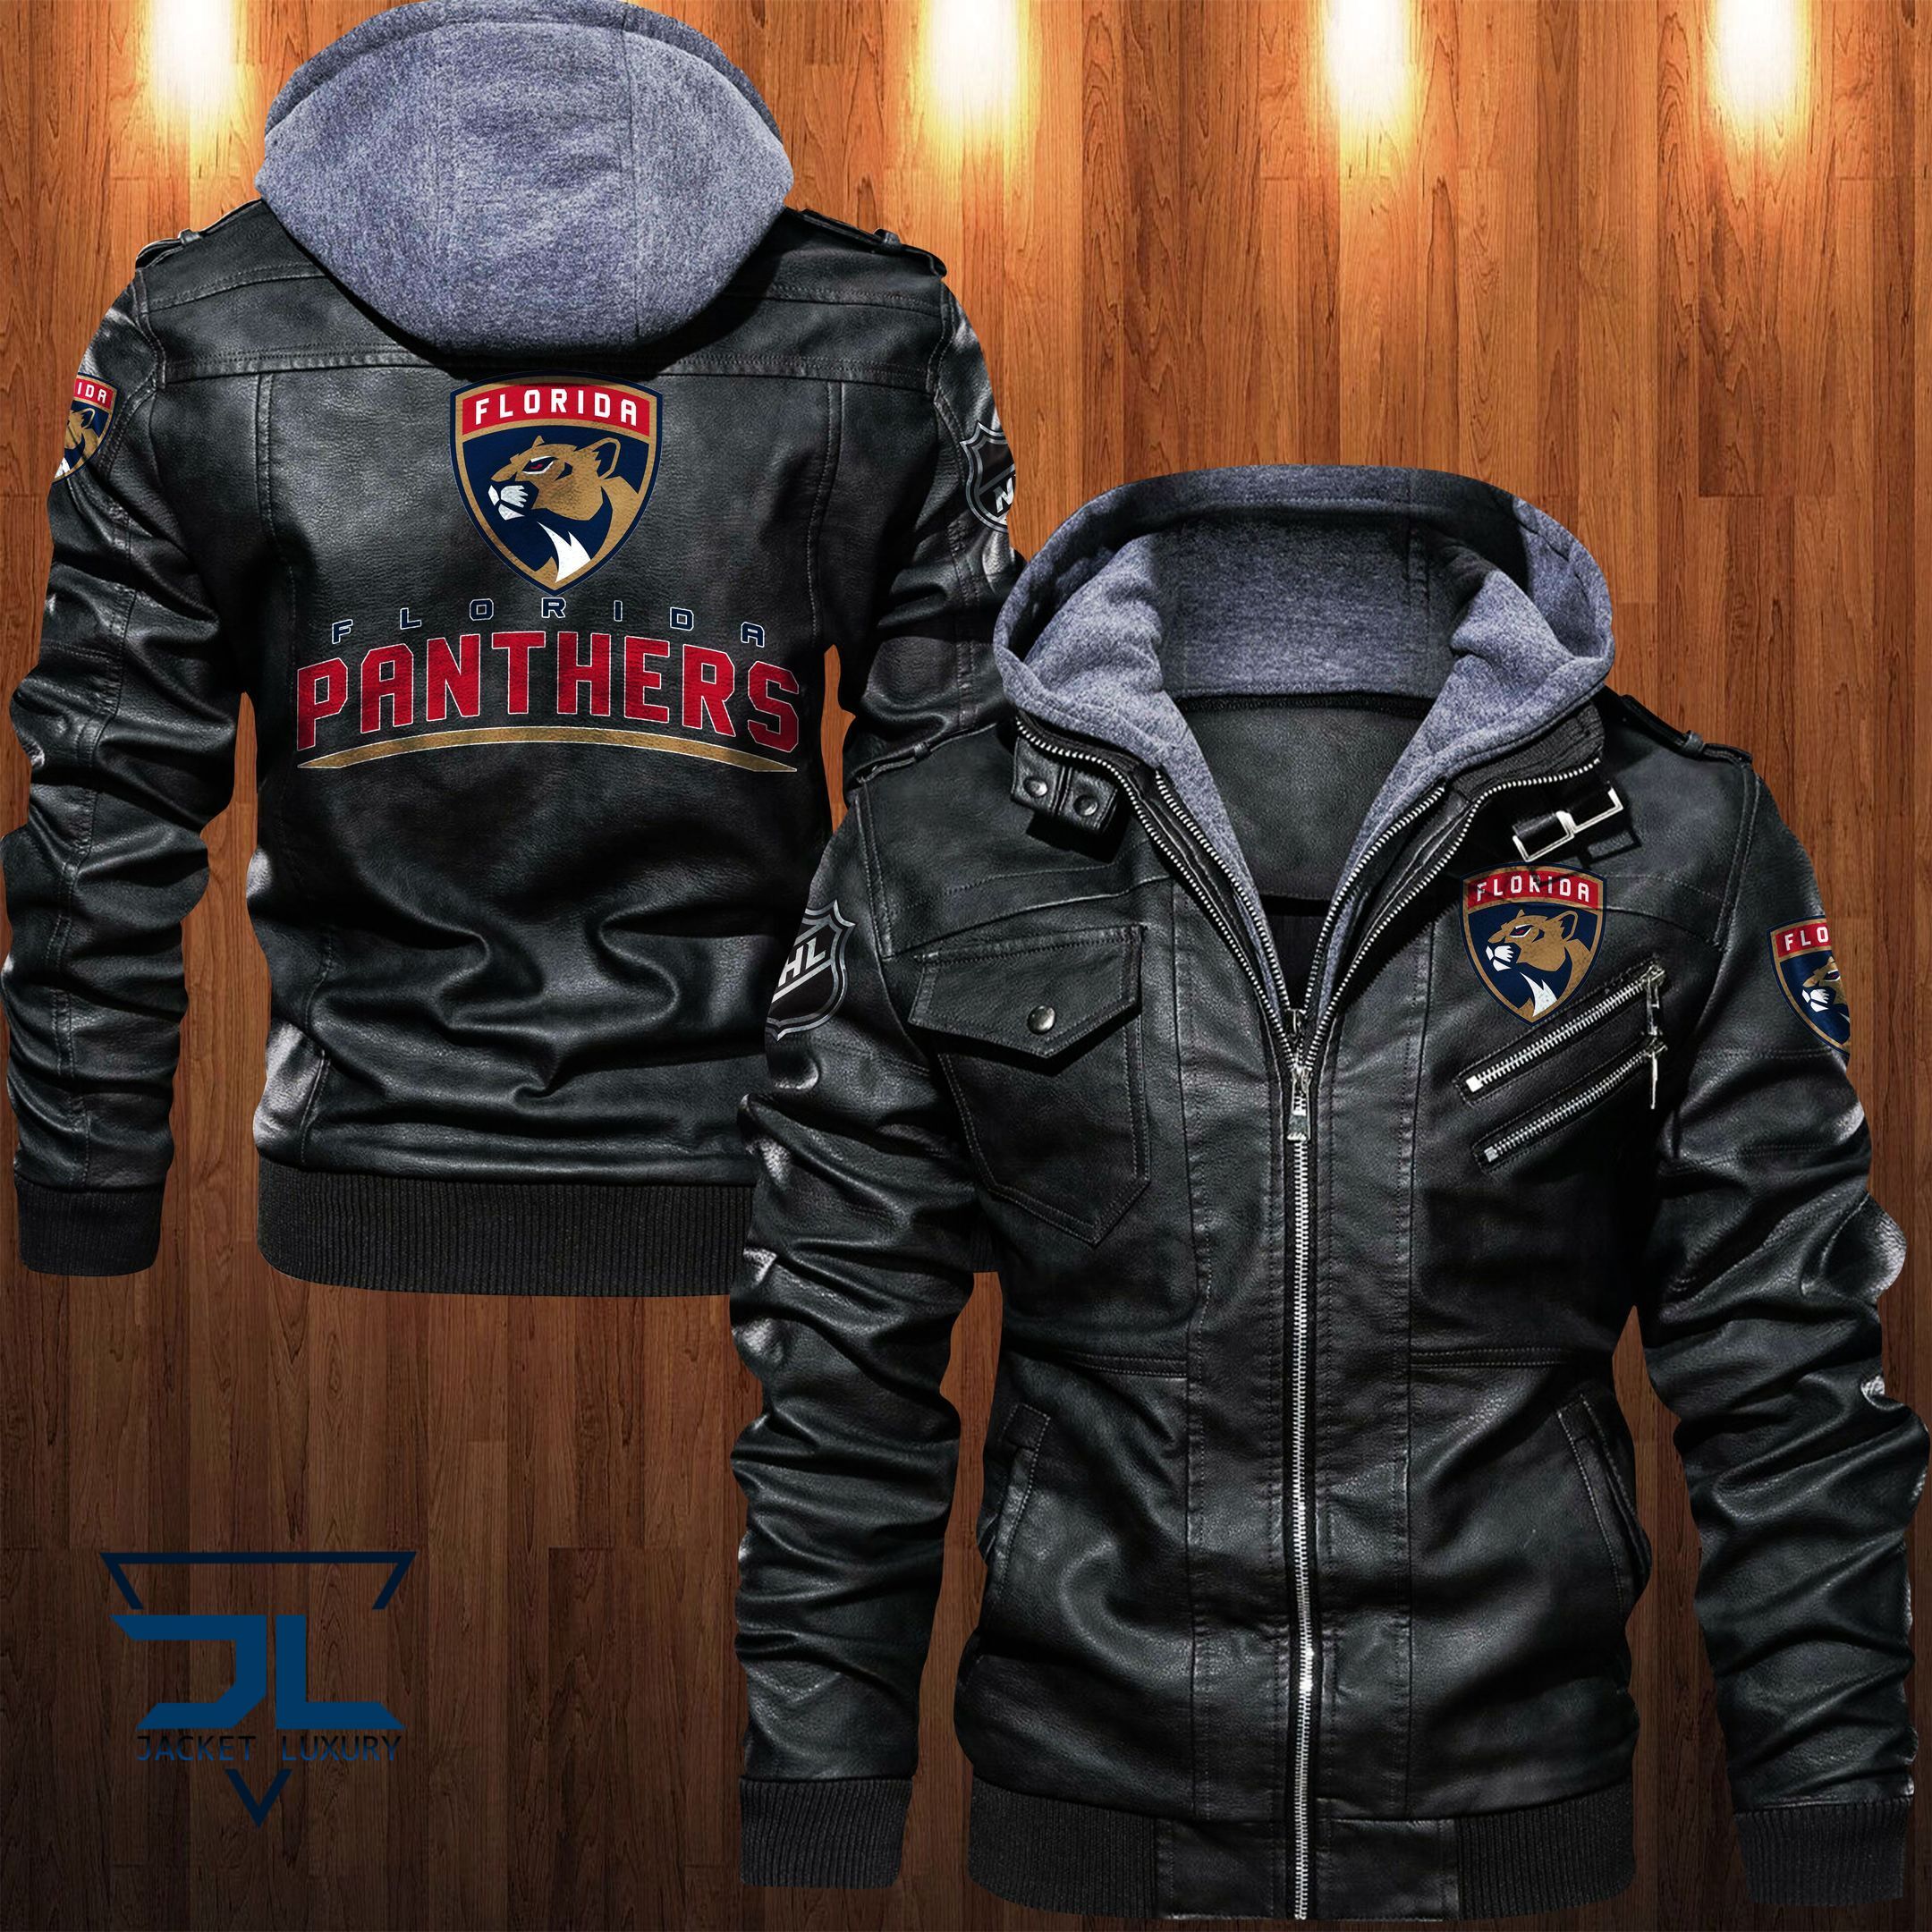 Get the best jackets under $100! 369